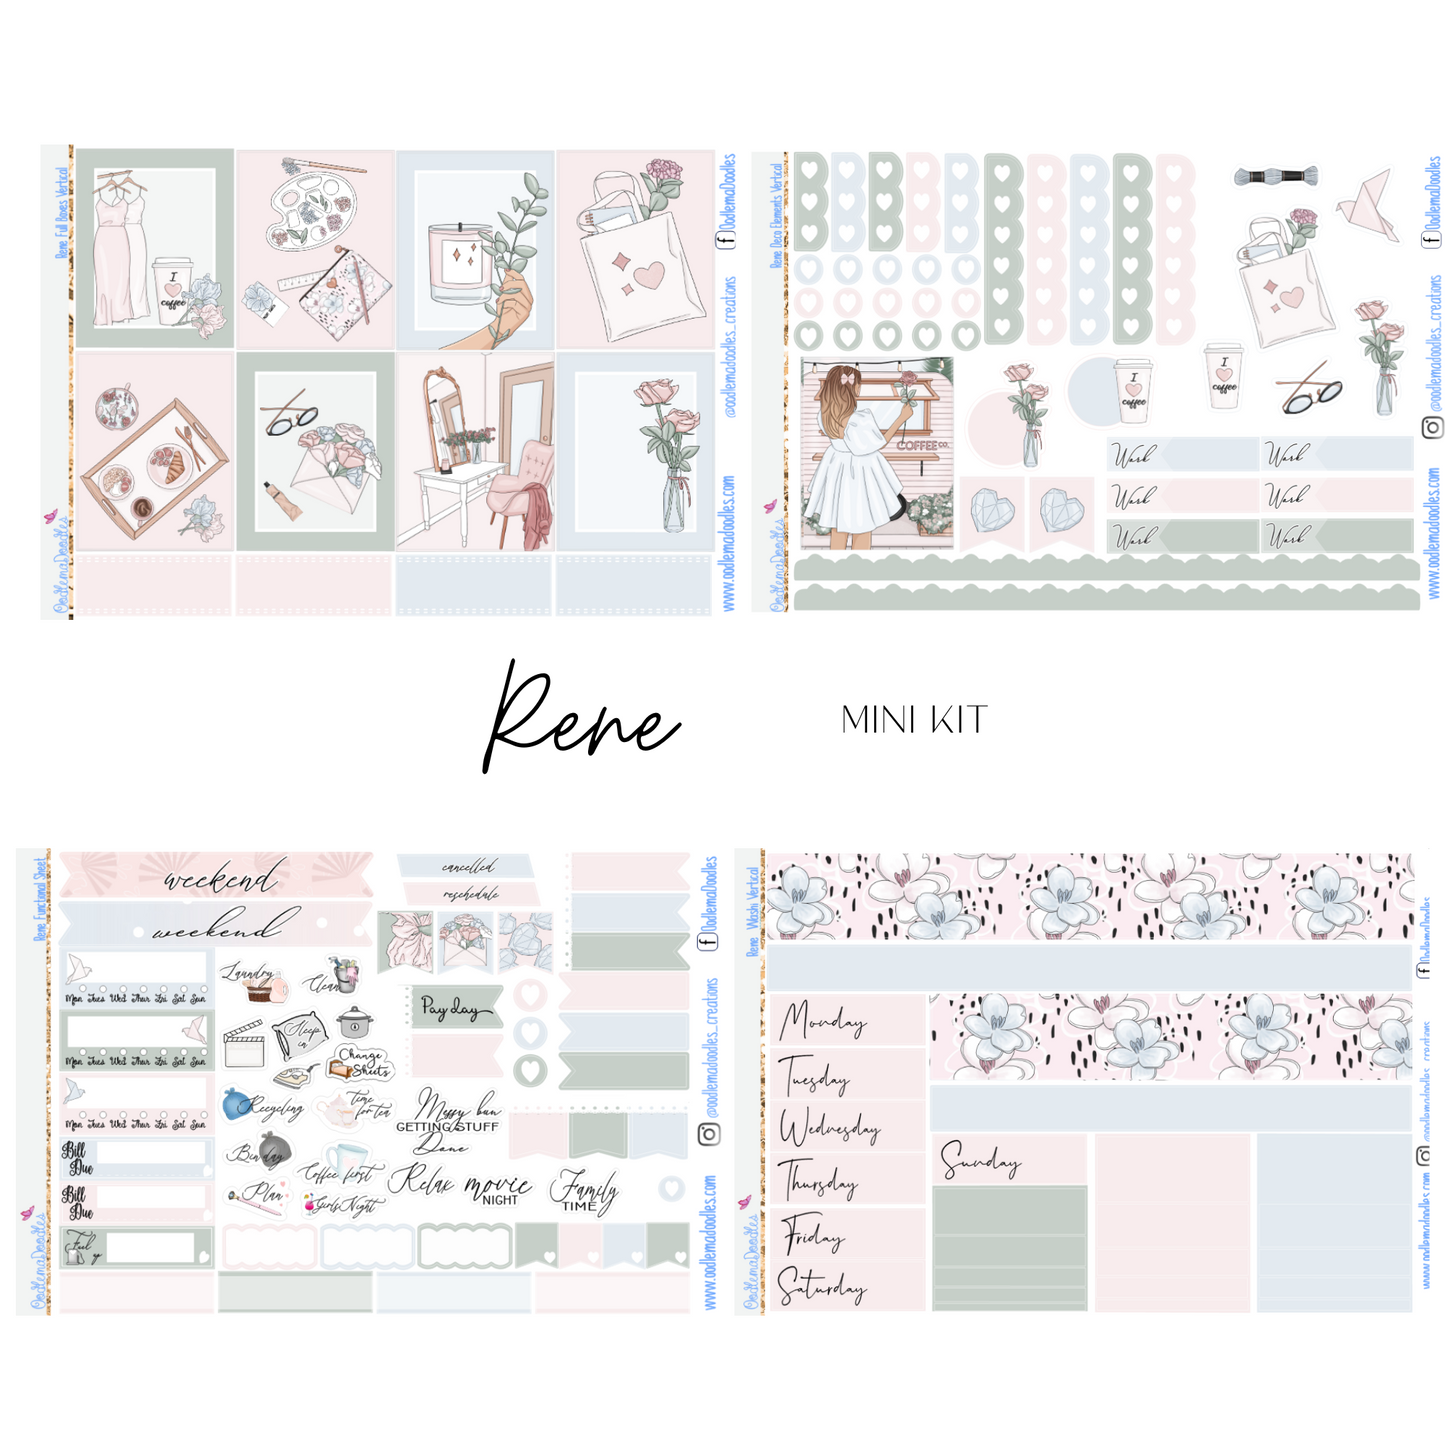 Rene Mini Kit